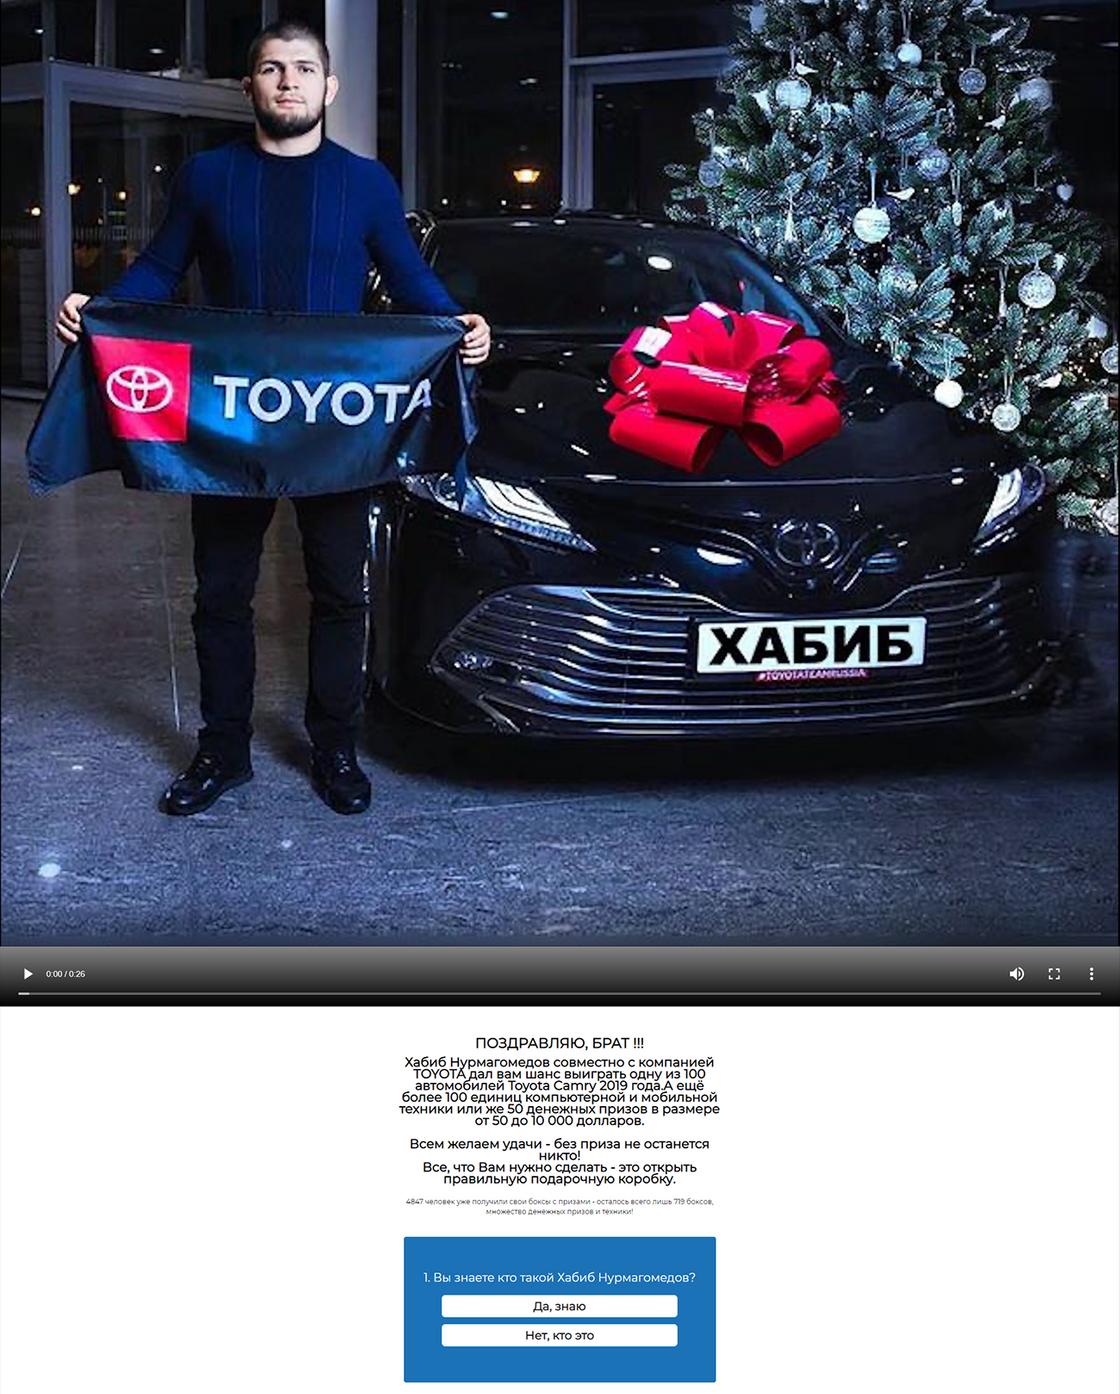 Скриншот с фишингового сайта с "розыгрышем" авто от Хабиба